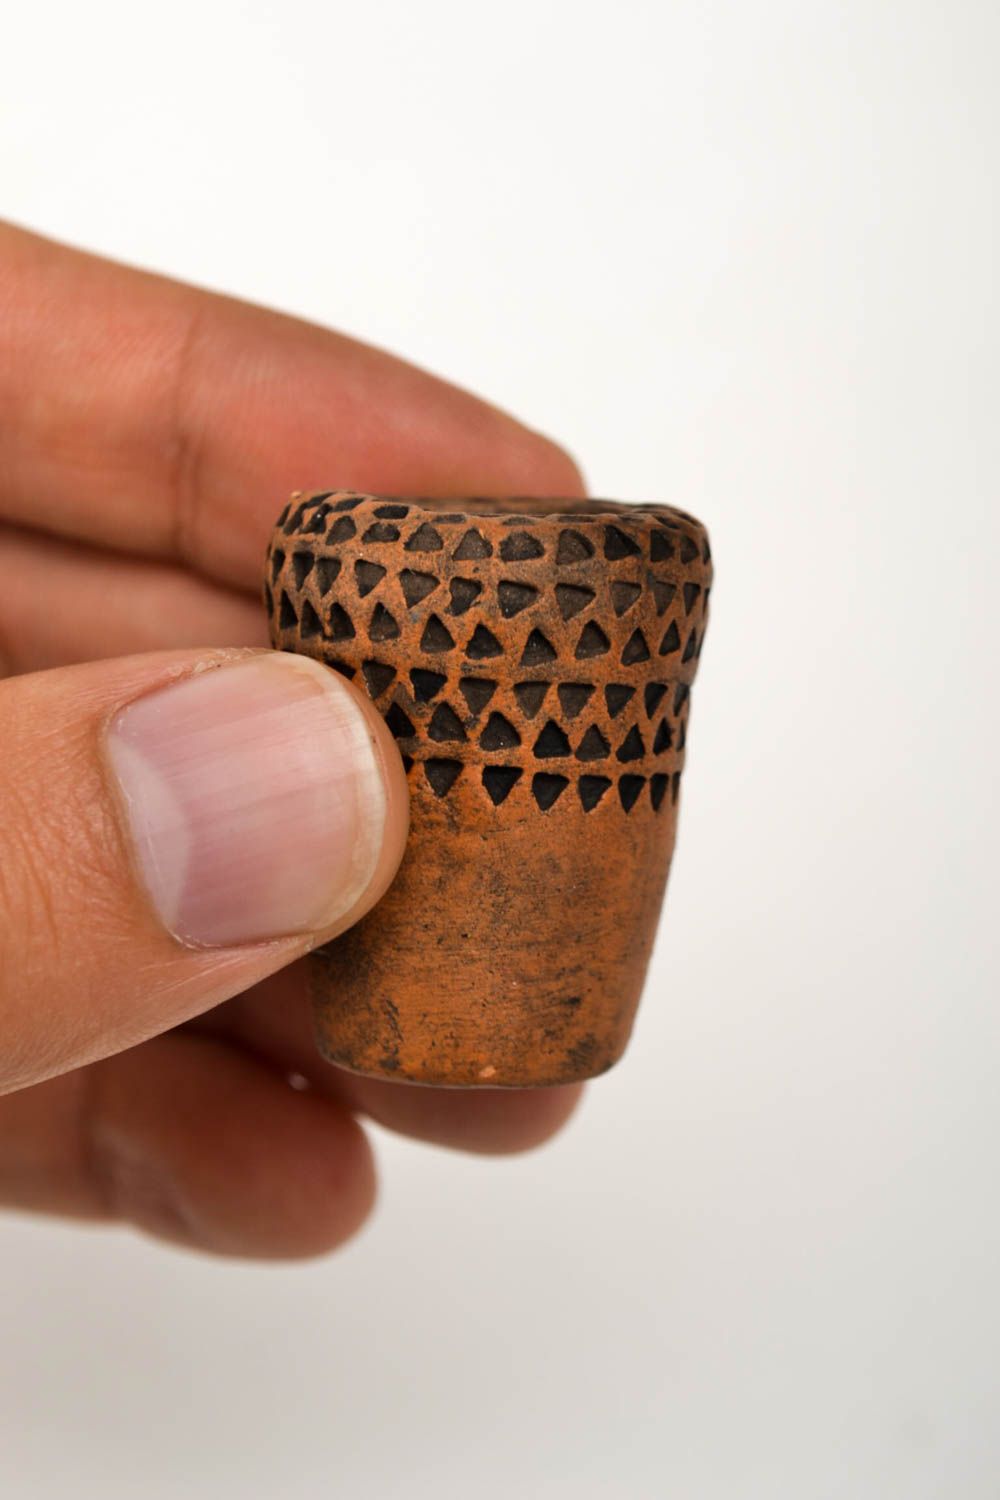 Курительная принадлежность ручная работа керамический сувенир изделие из глины фото 5